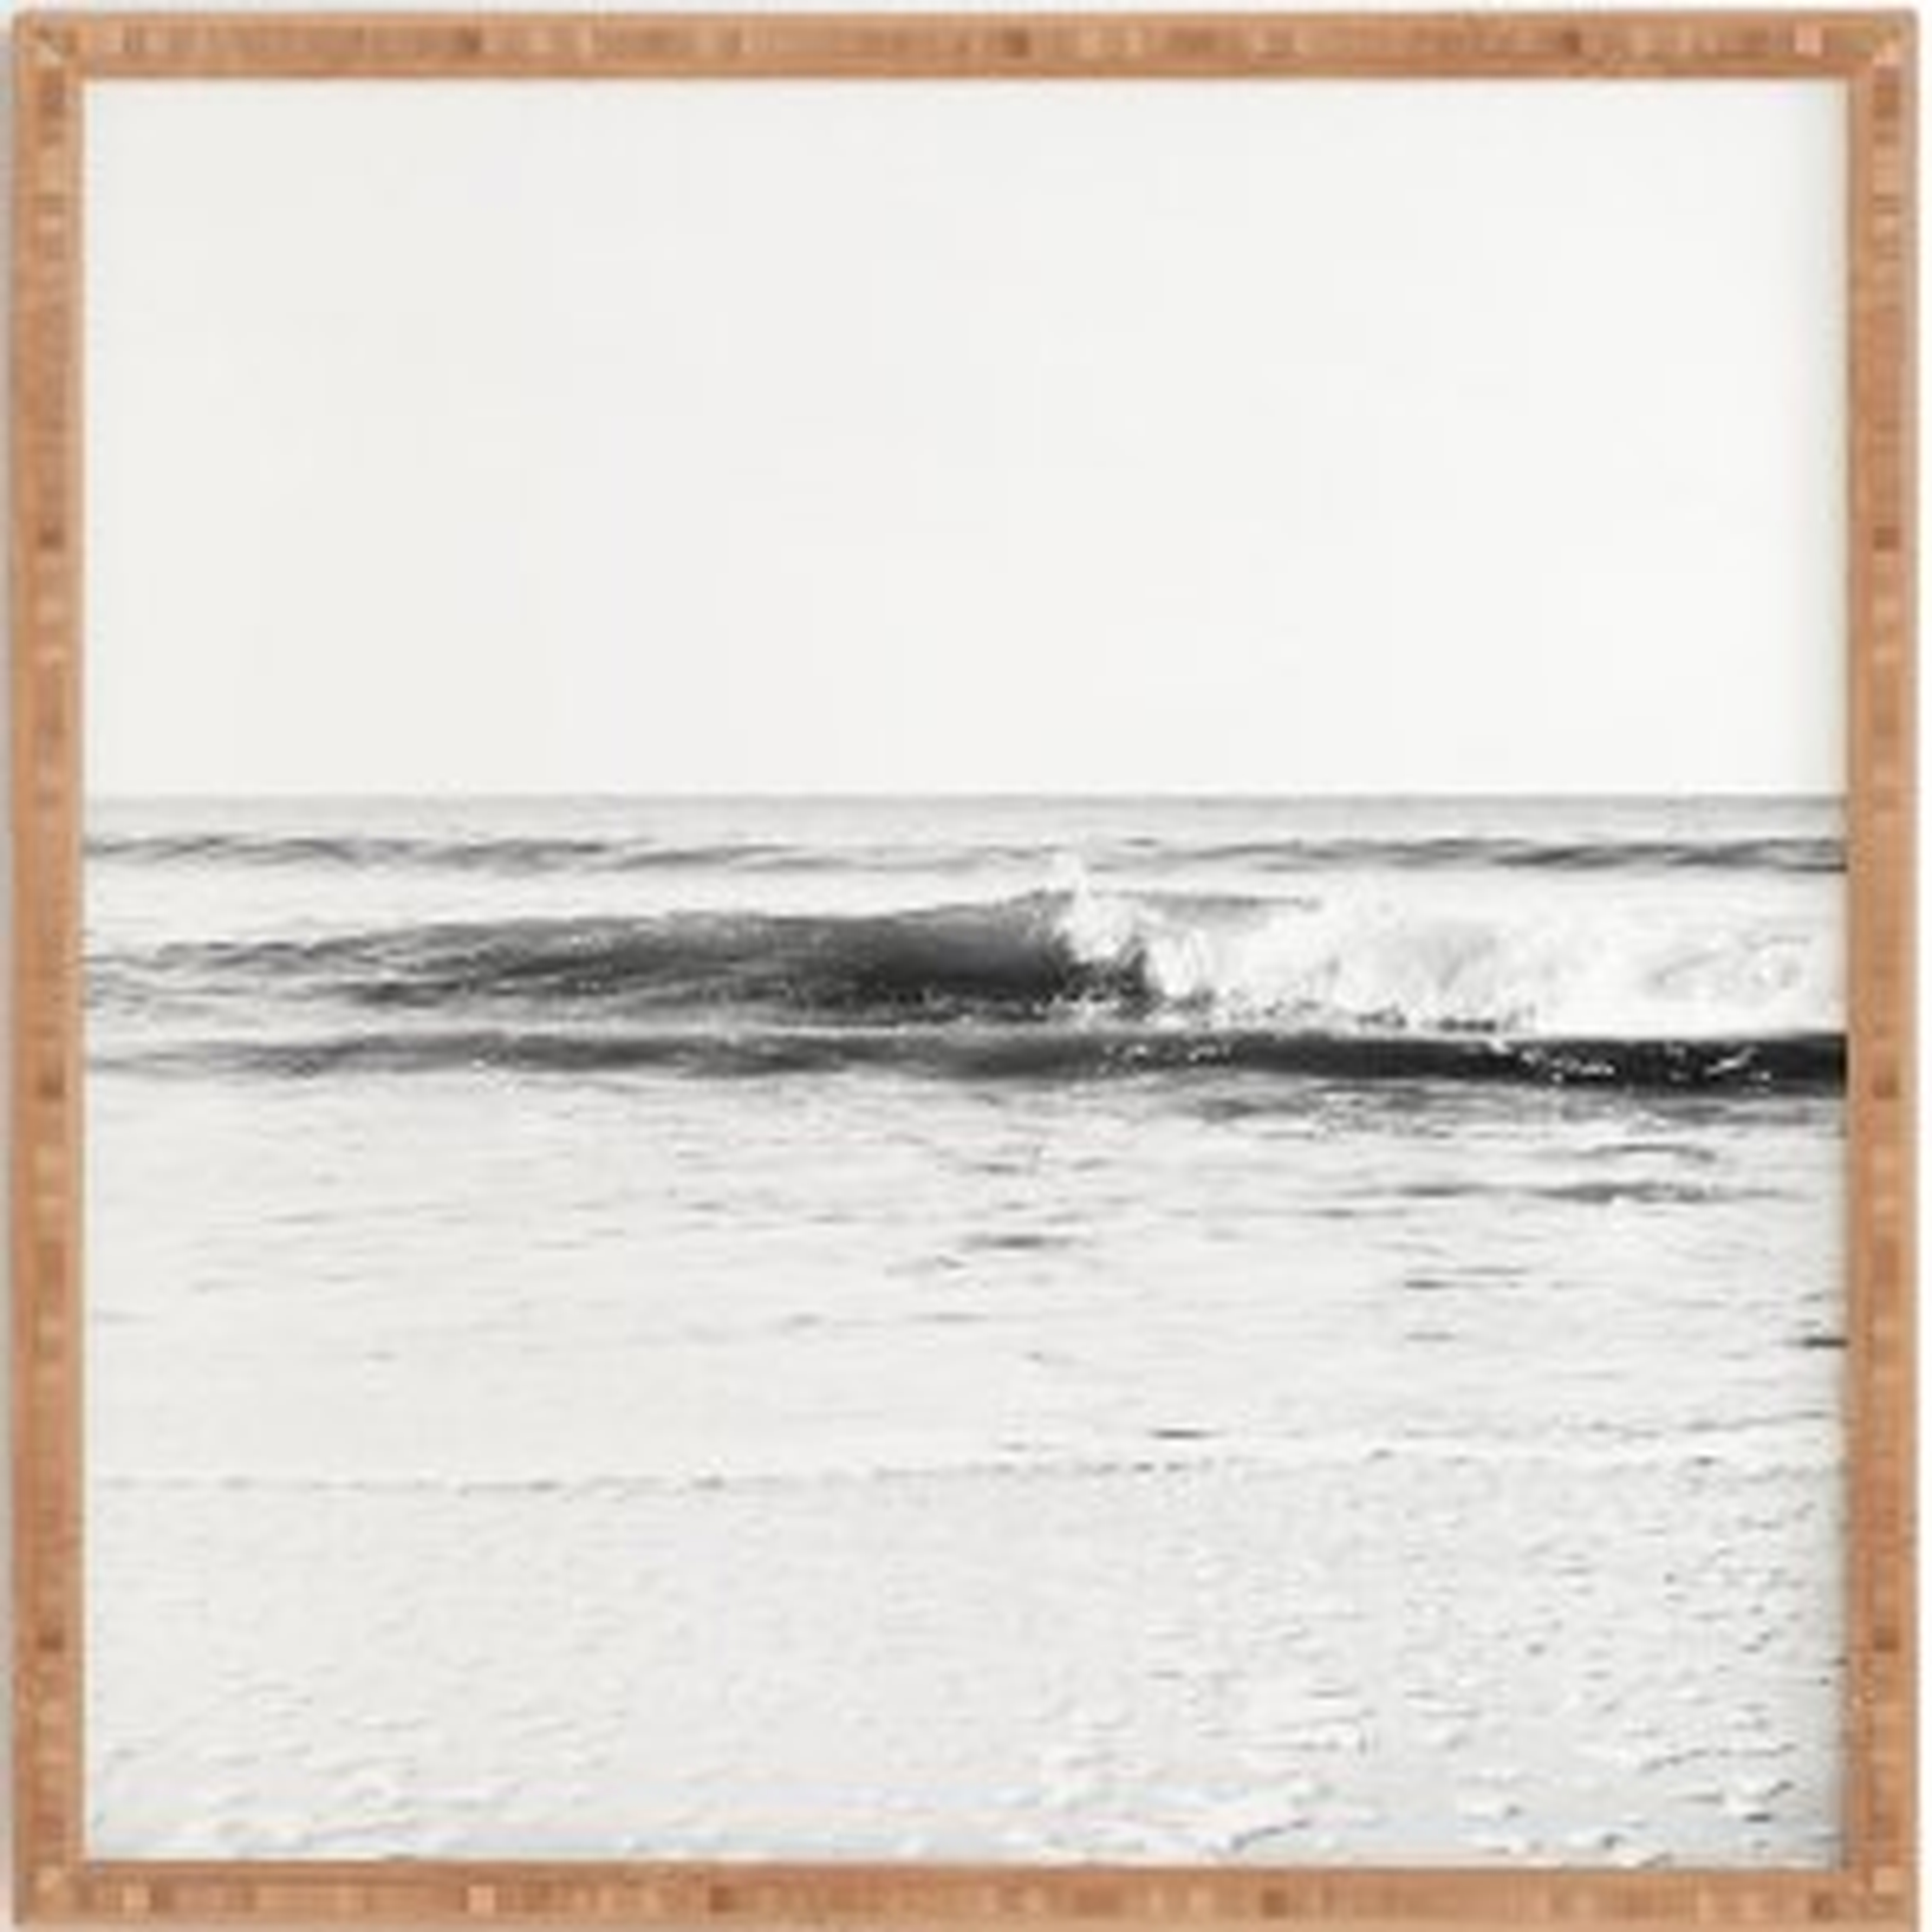 SURF BREAK - Wander Print Co.